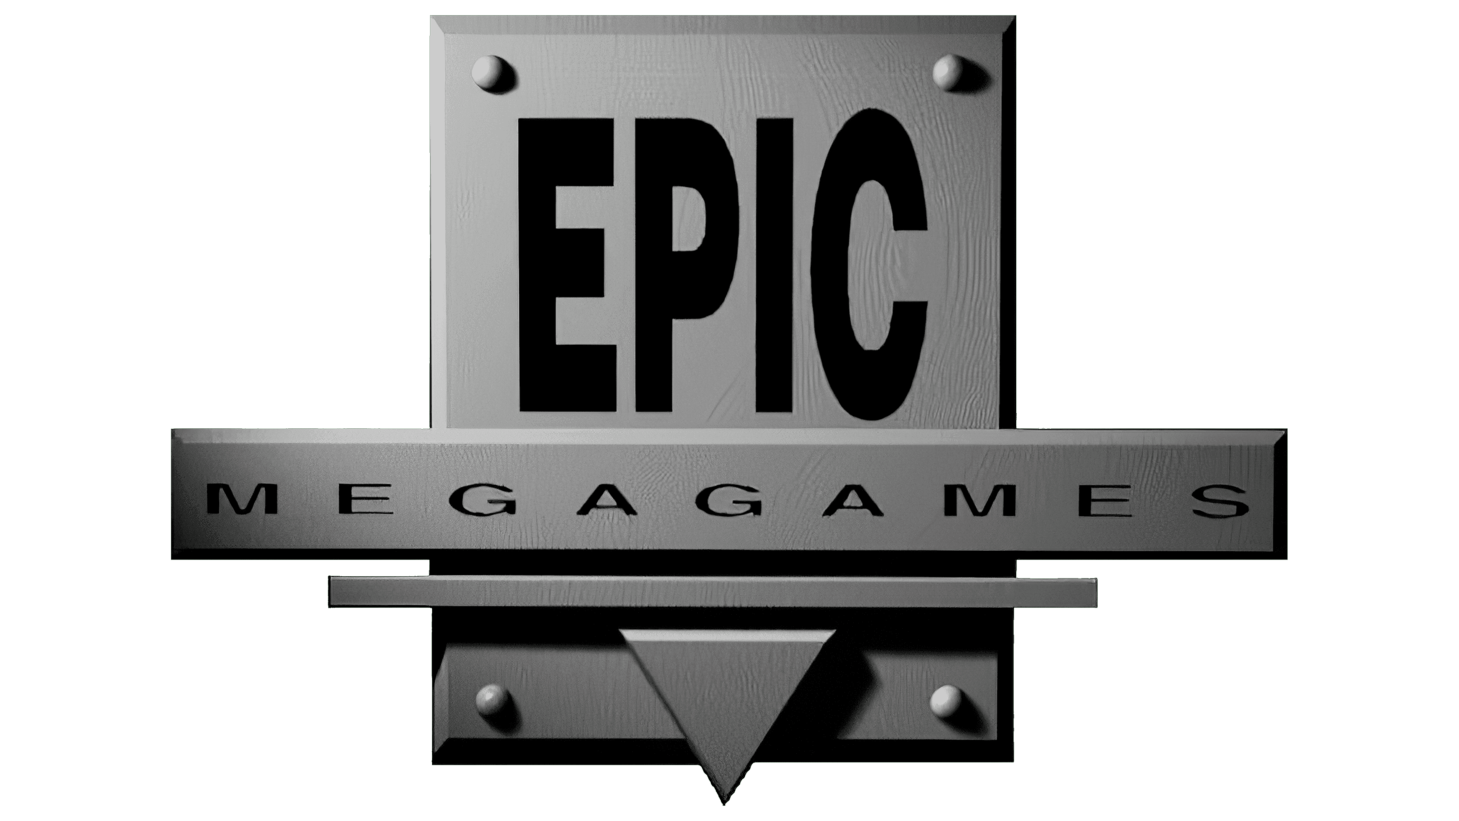 Epic megagames sign 1995